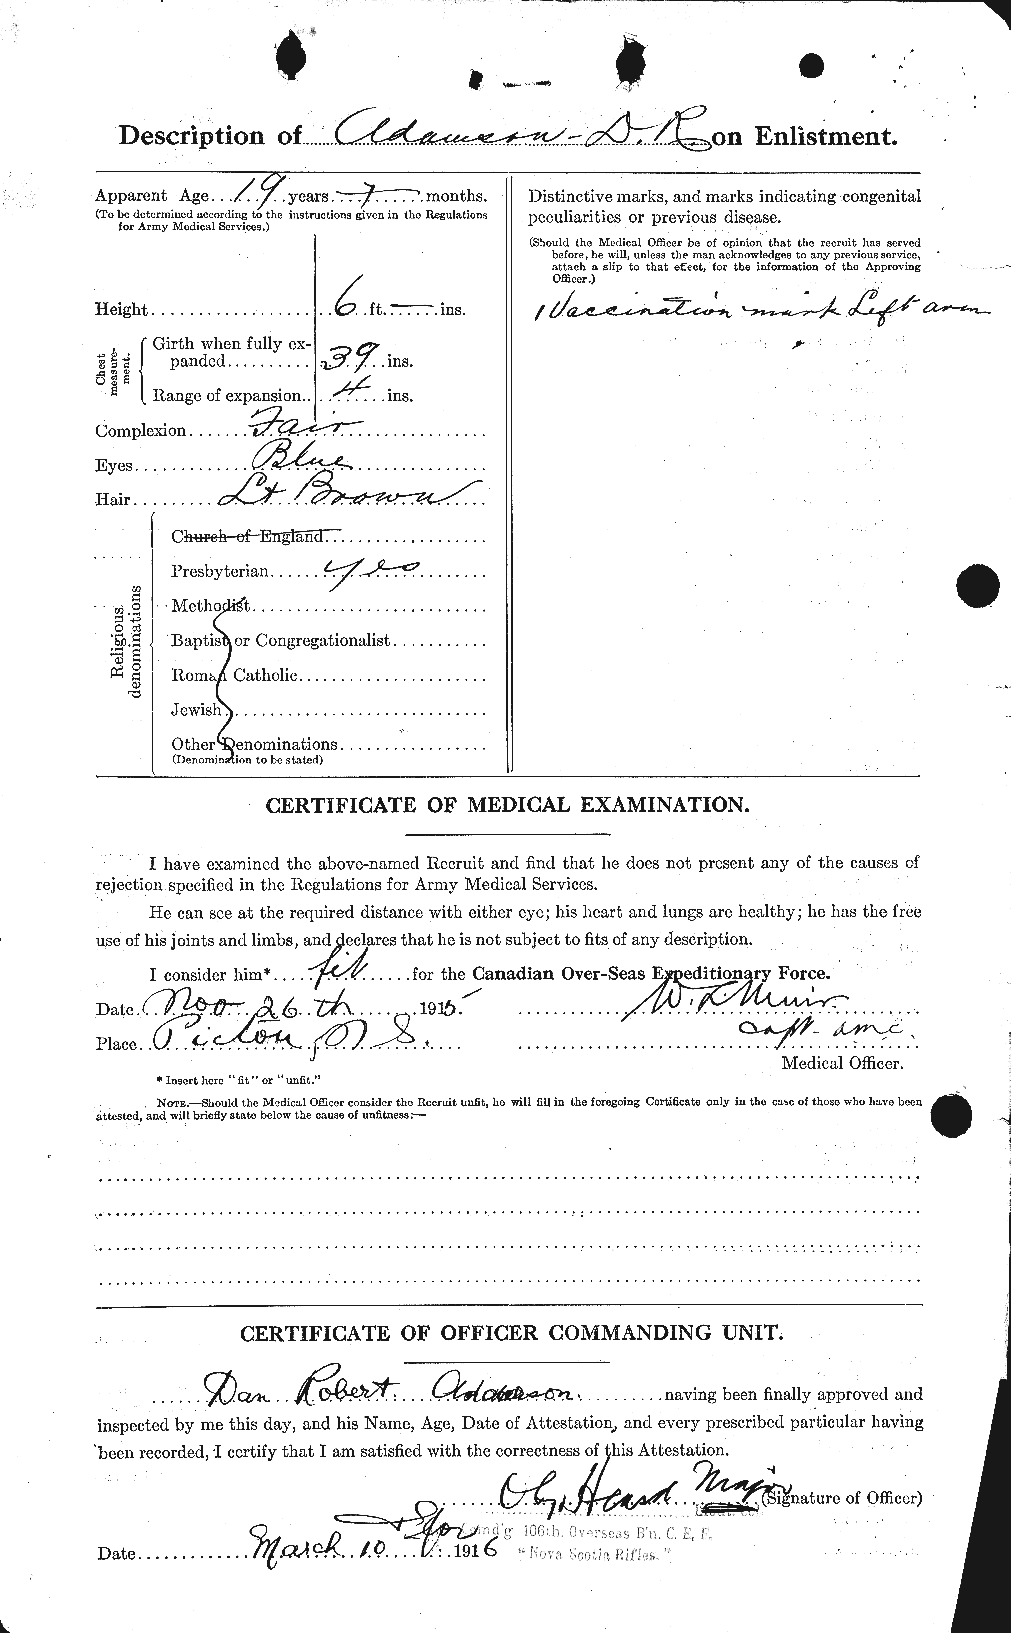 Dossiers du Personnel de la Première Guerre mondiale - CEC 202324b